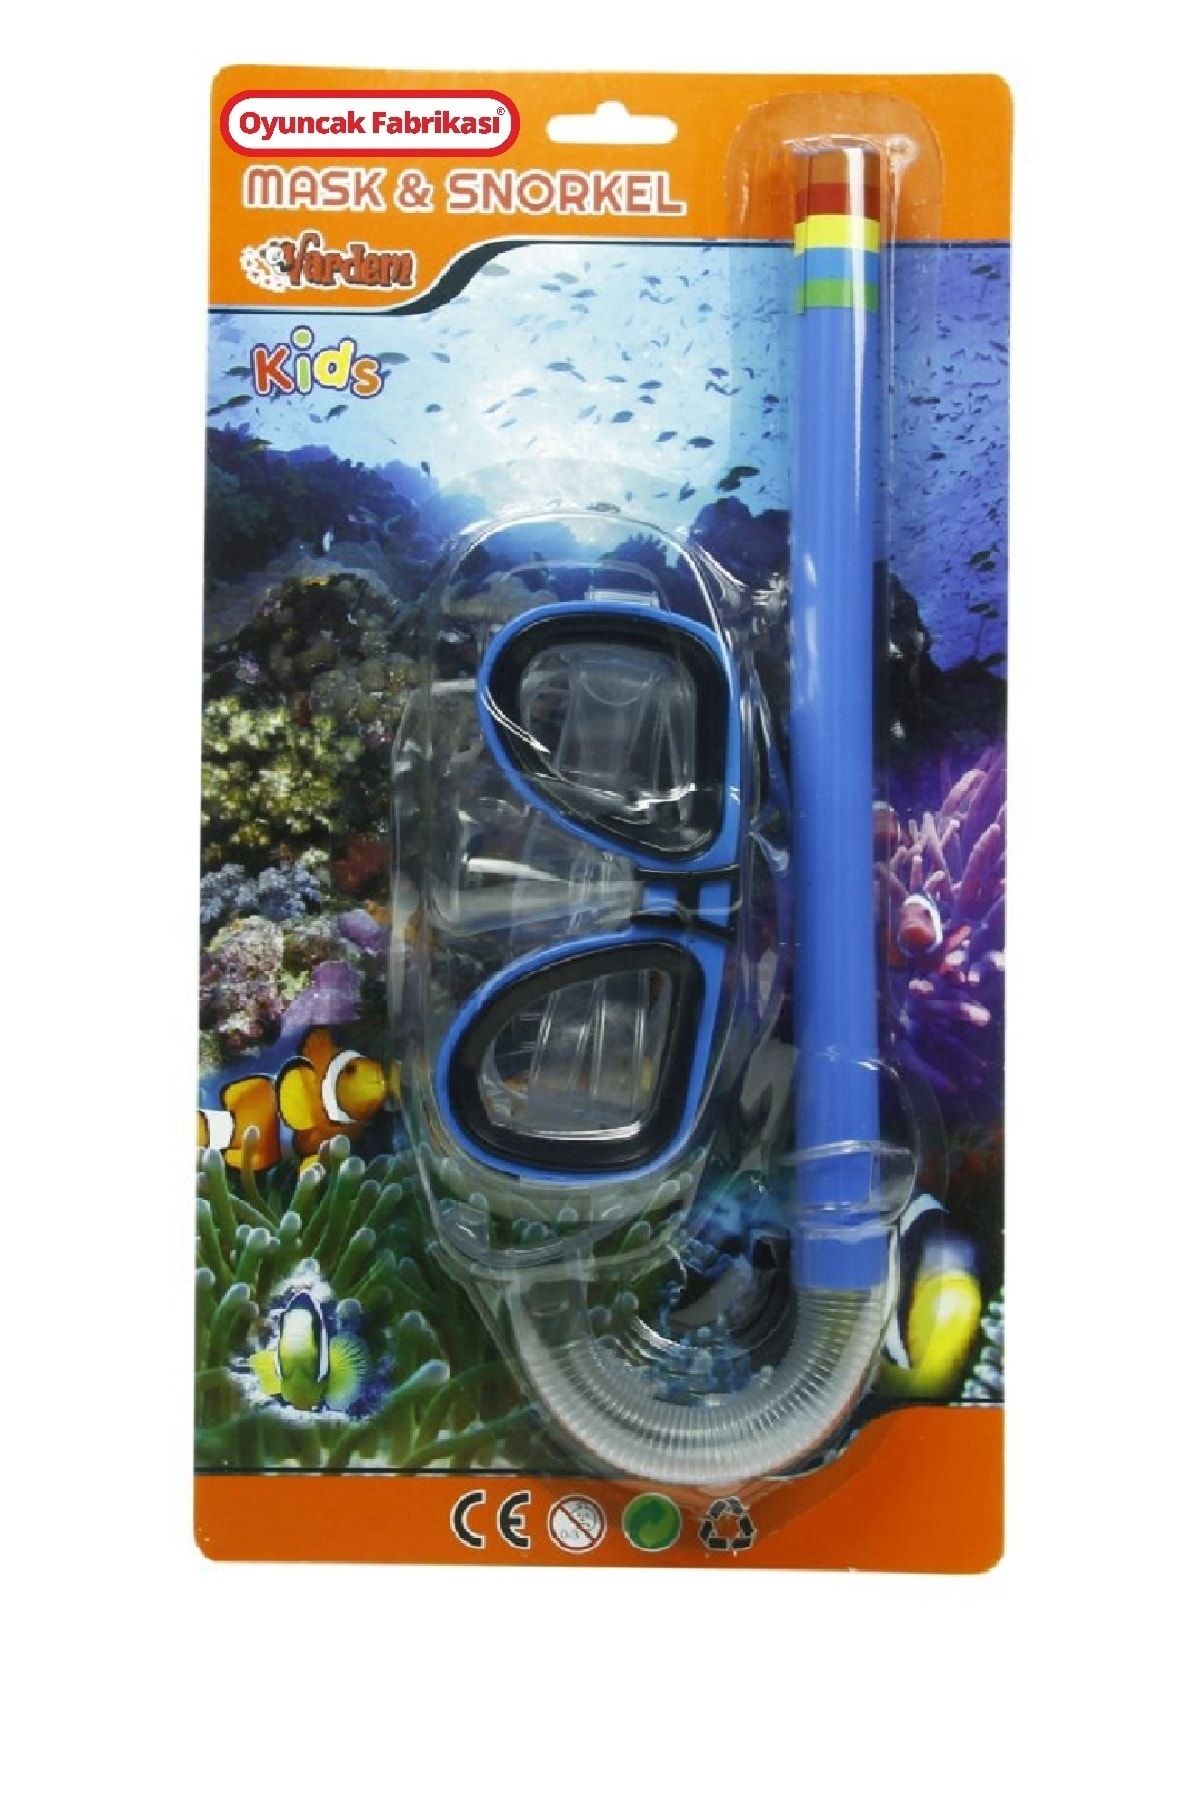 Oyuncakfabrikasi Deniz Gözlüğü Çocuk Maske Snorkel Set 3 Yaş Üzeri